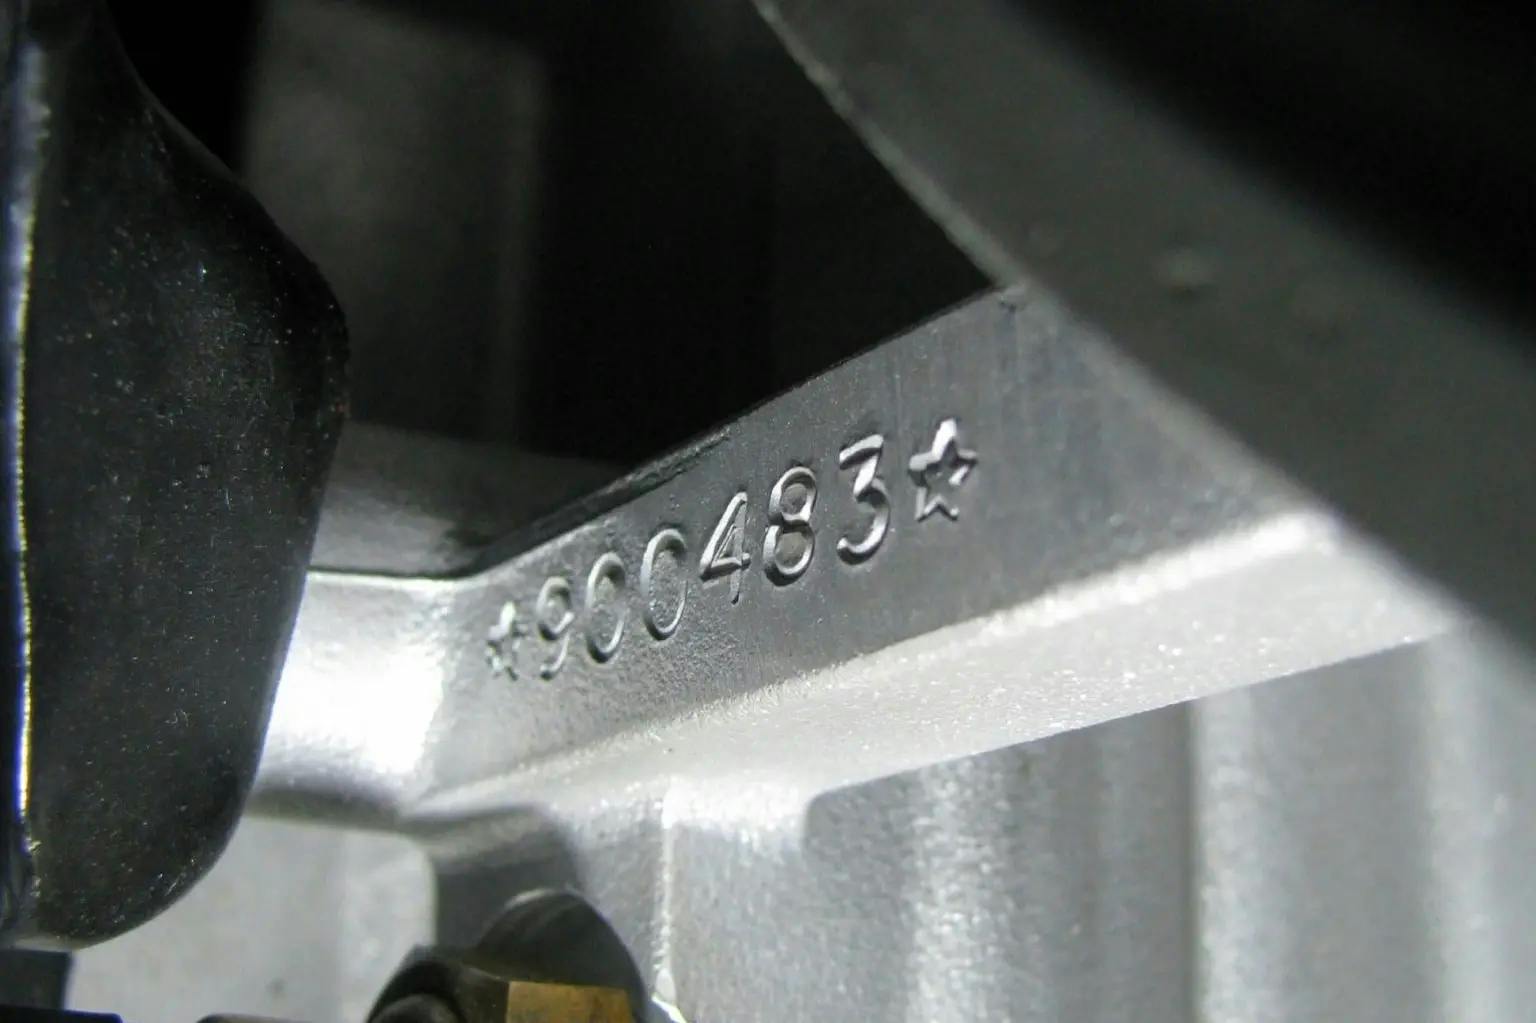 1965-Porsche-engline-number detail